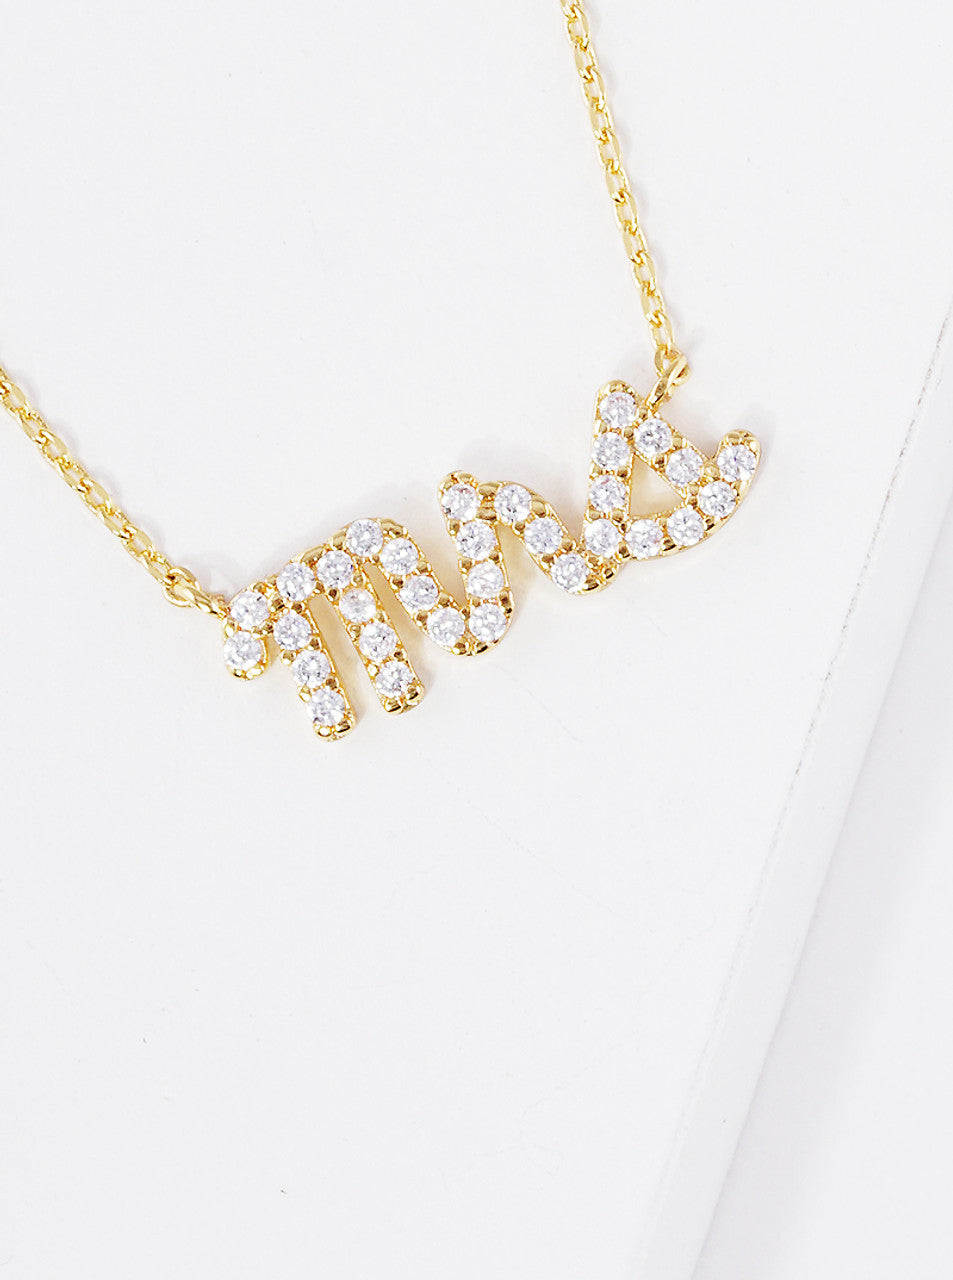 Gold "Mrs" Script Necklace